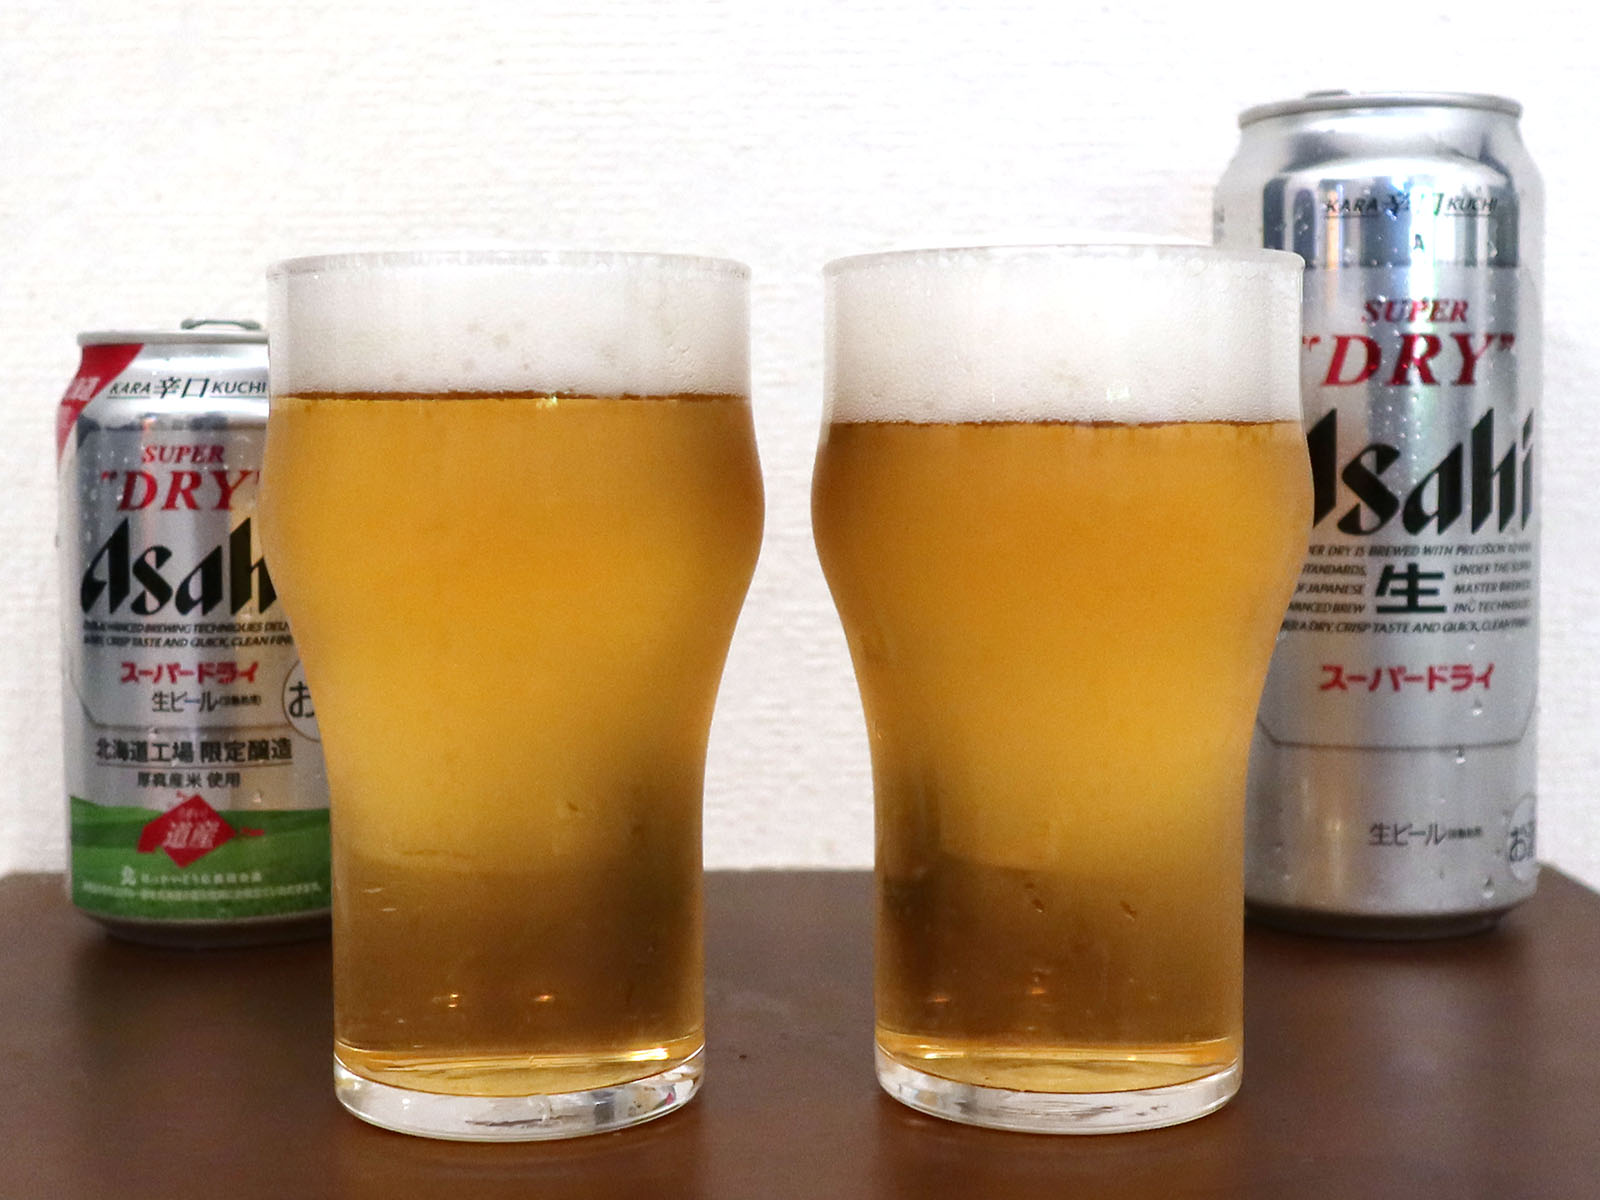 アサヒビール アサヒスーパードライ 北海道工場限定醸造を飲み比べ